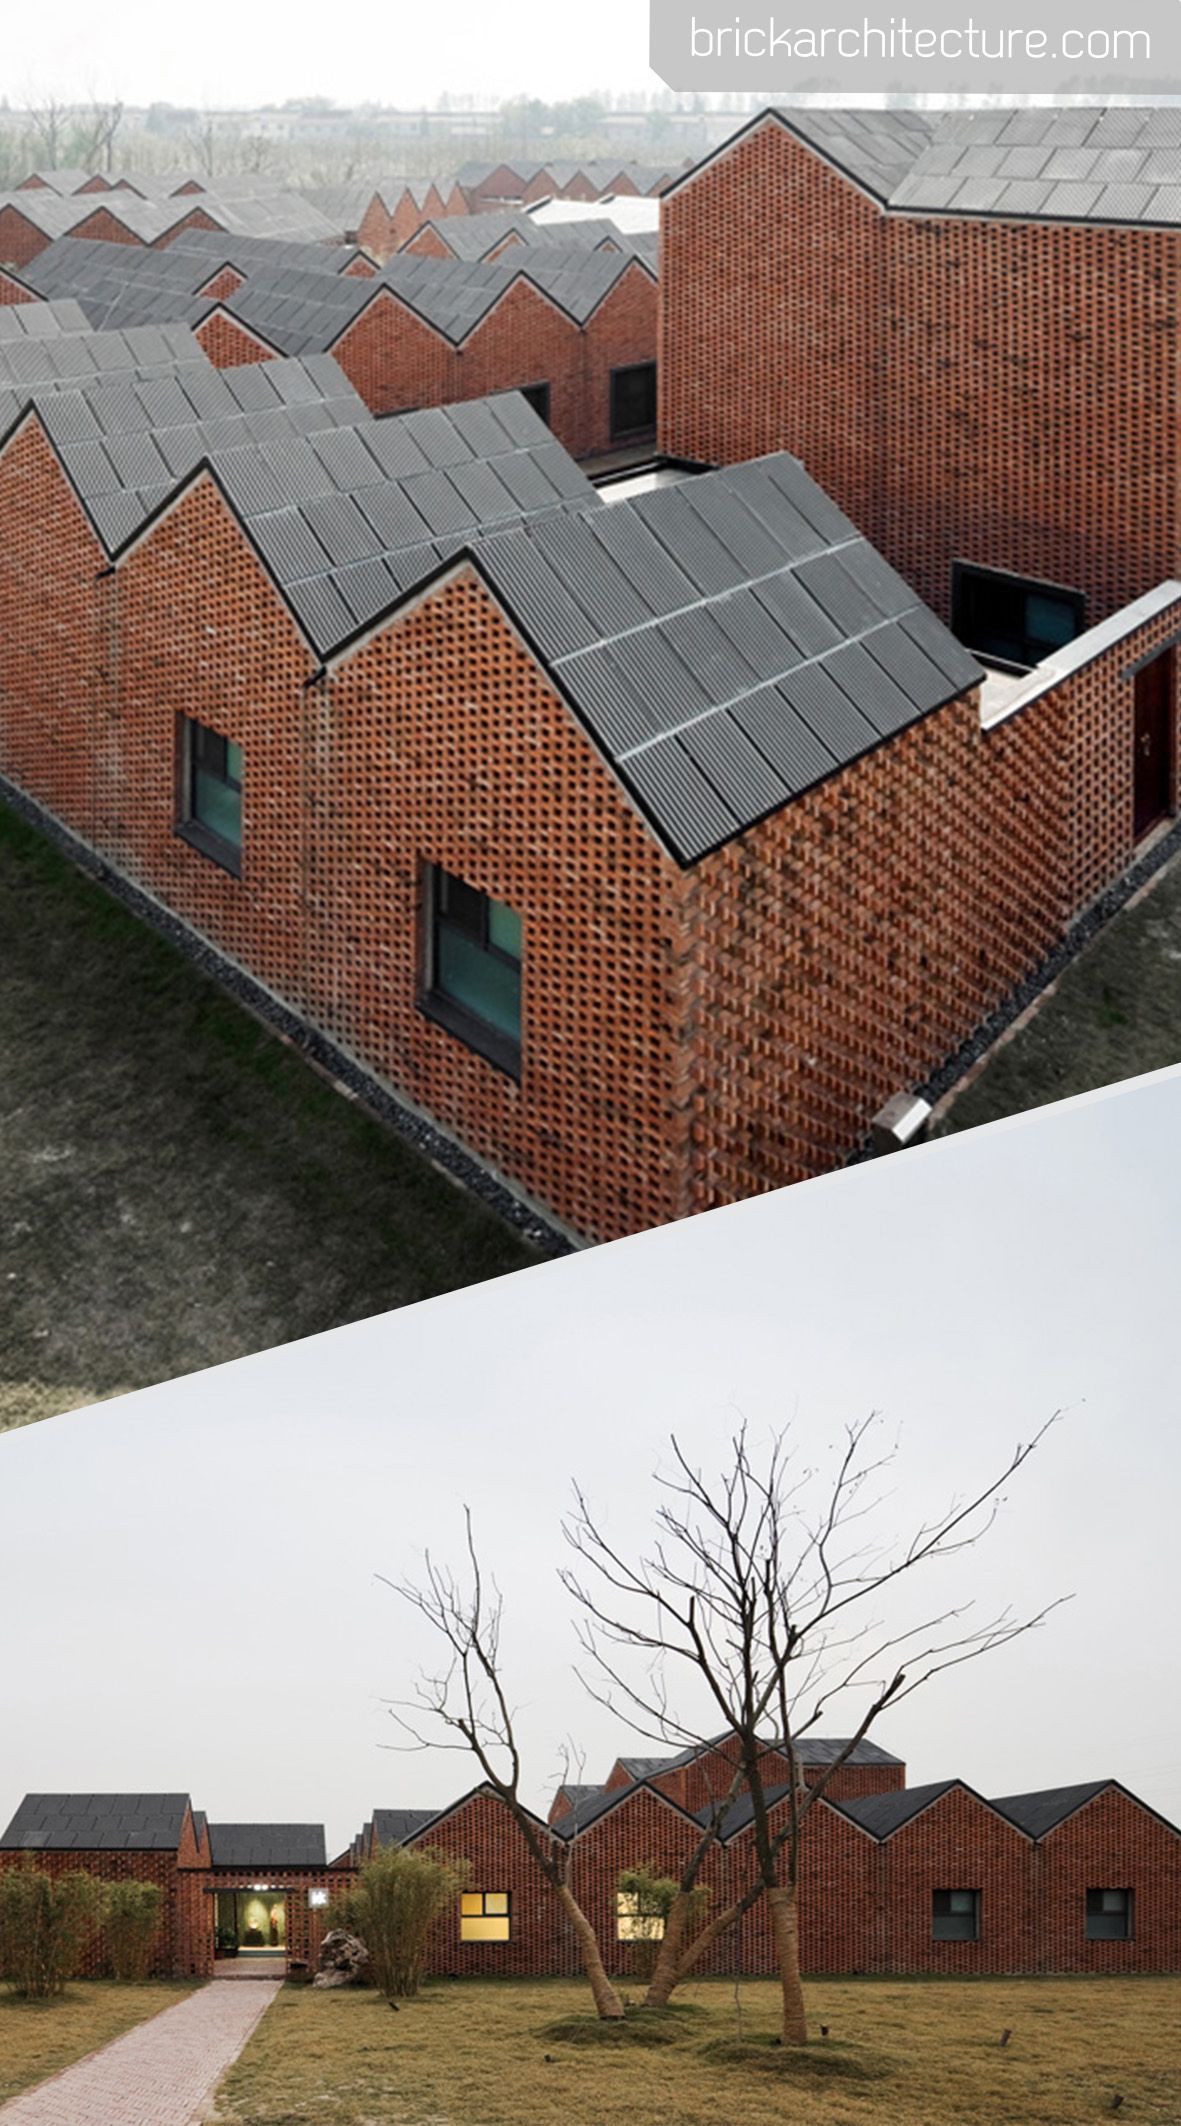 Three Courtyard Community centre / AZL architects -   9 garden design Architecture bricks ideas